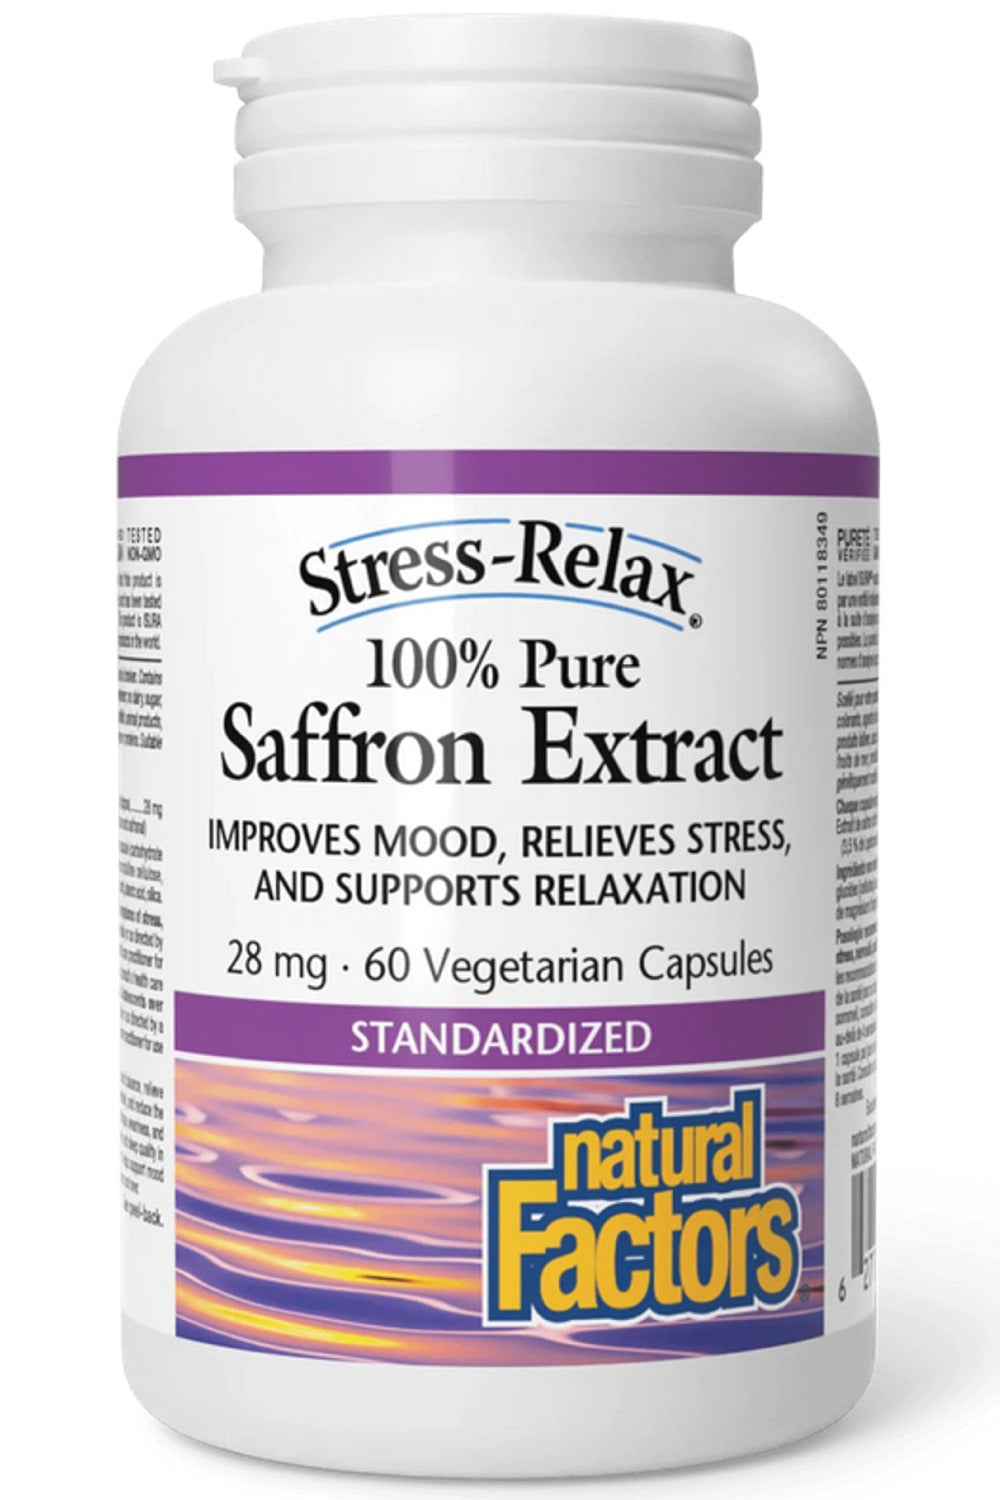 NATURAL FACTORS STRESS RELAX Saffron Extract (28 mg - 60 vcaps)